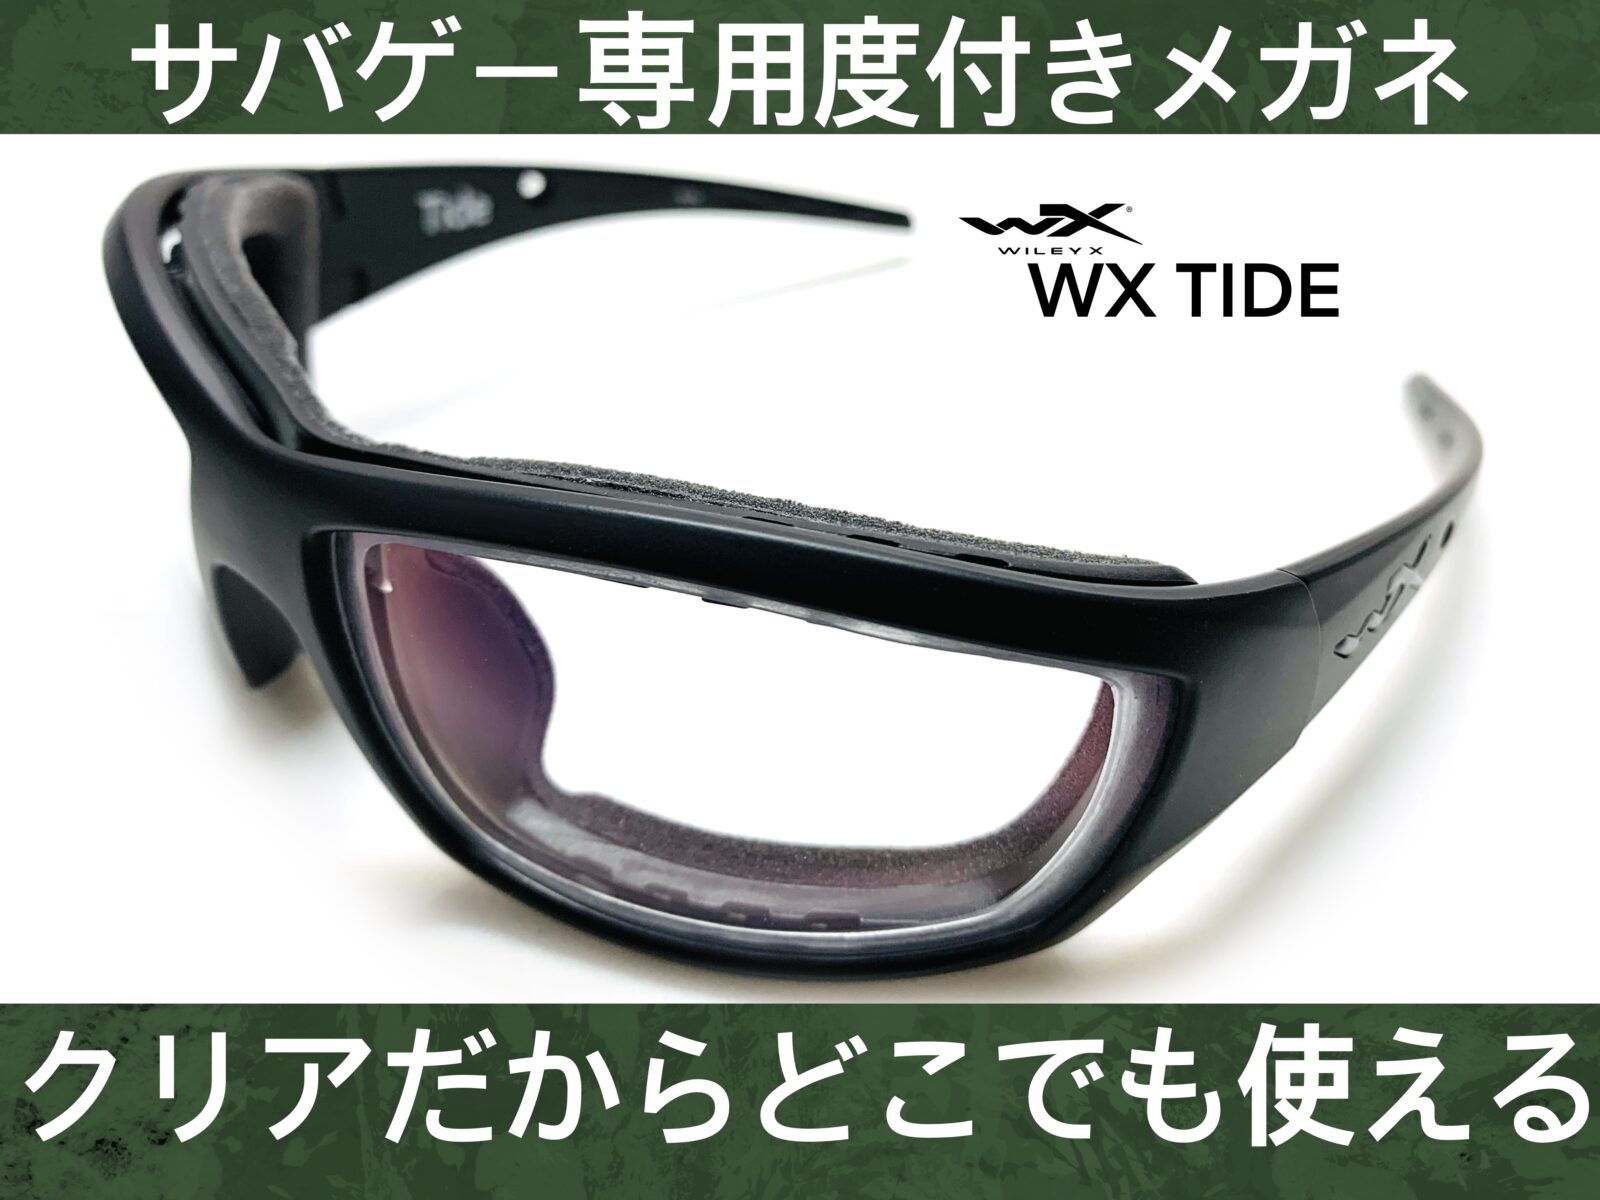 サバゲ-専用度付きメガネ/Wiley X/WX TIDE(廃盤) – 名古屋栄のスポーツ